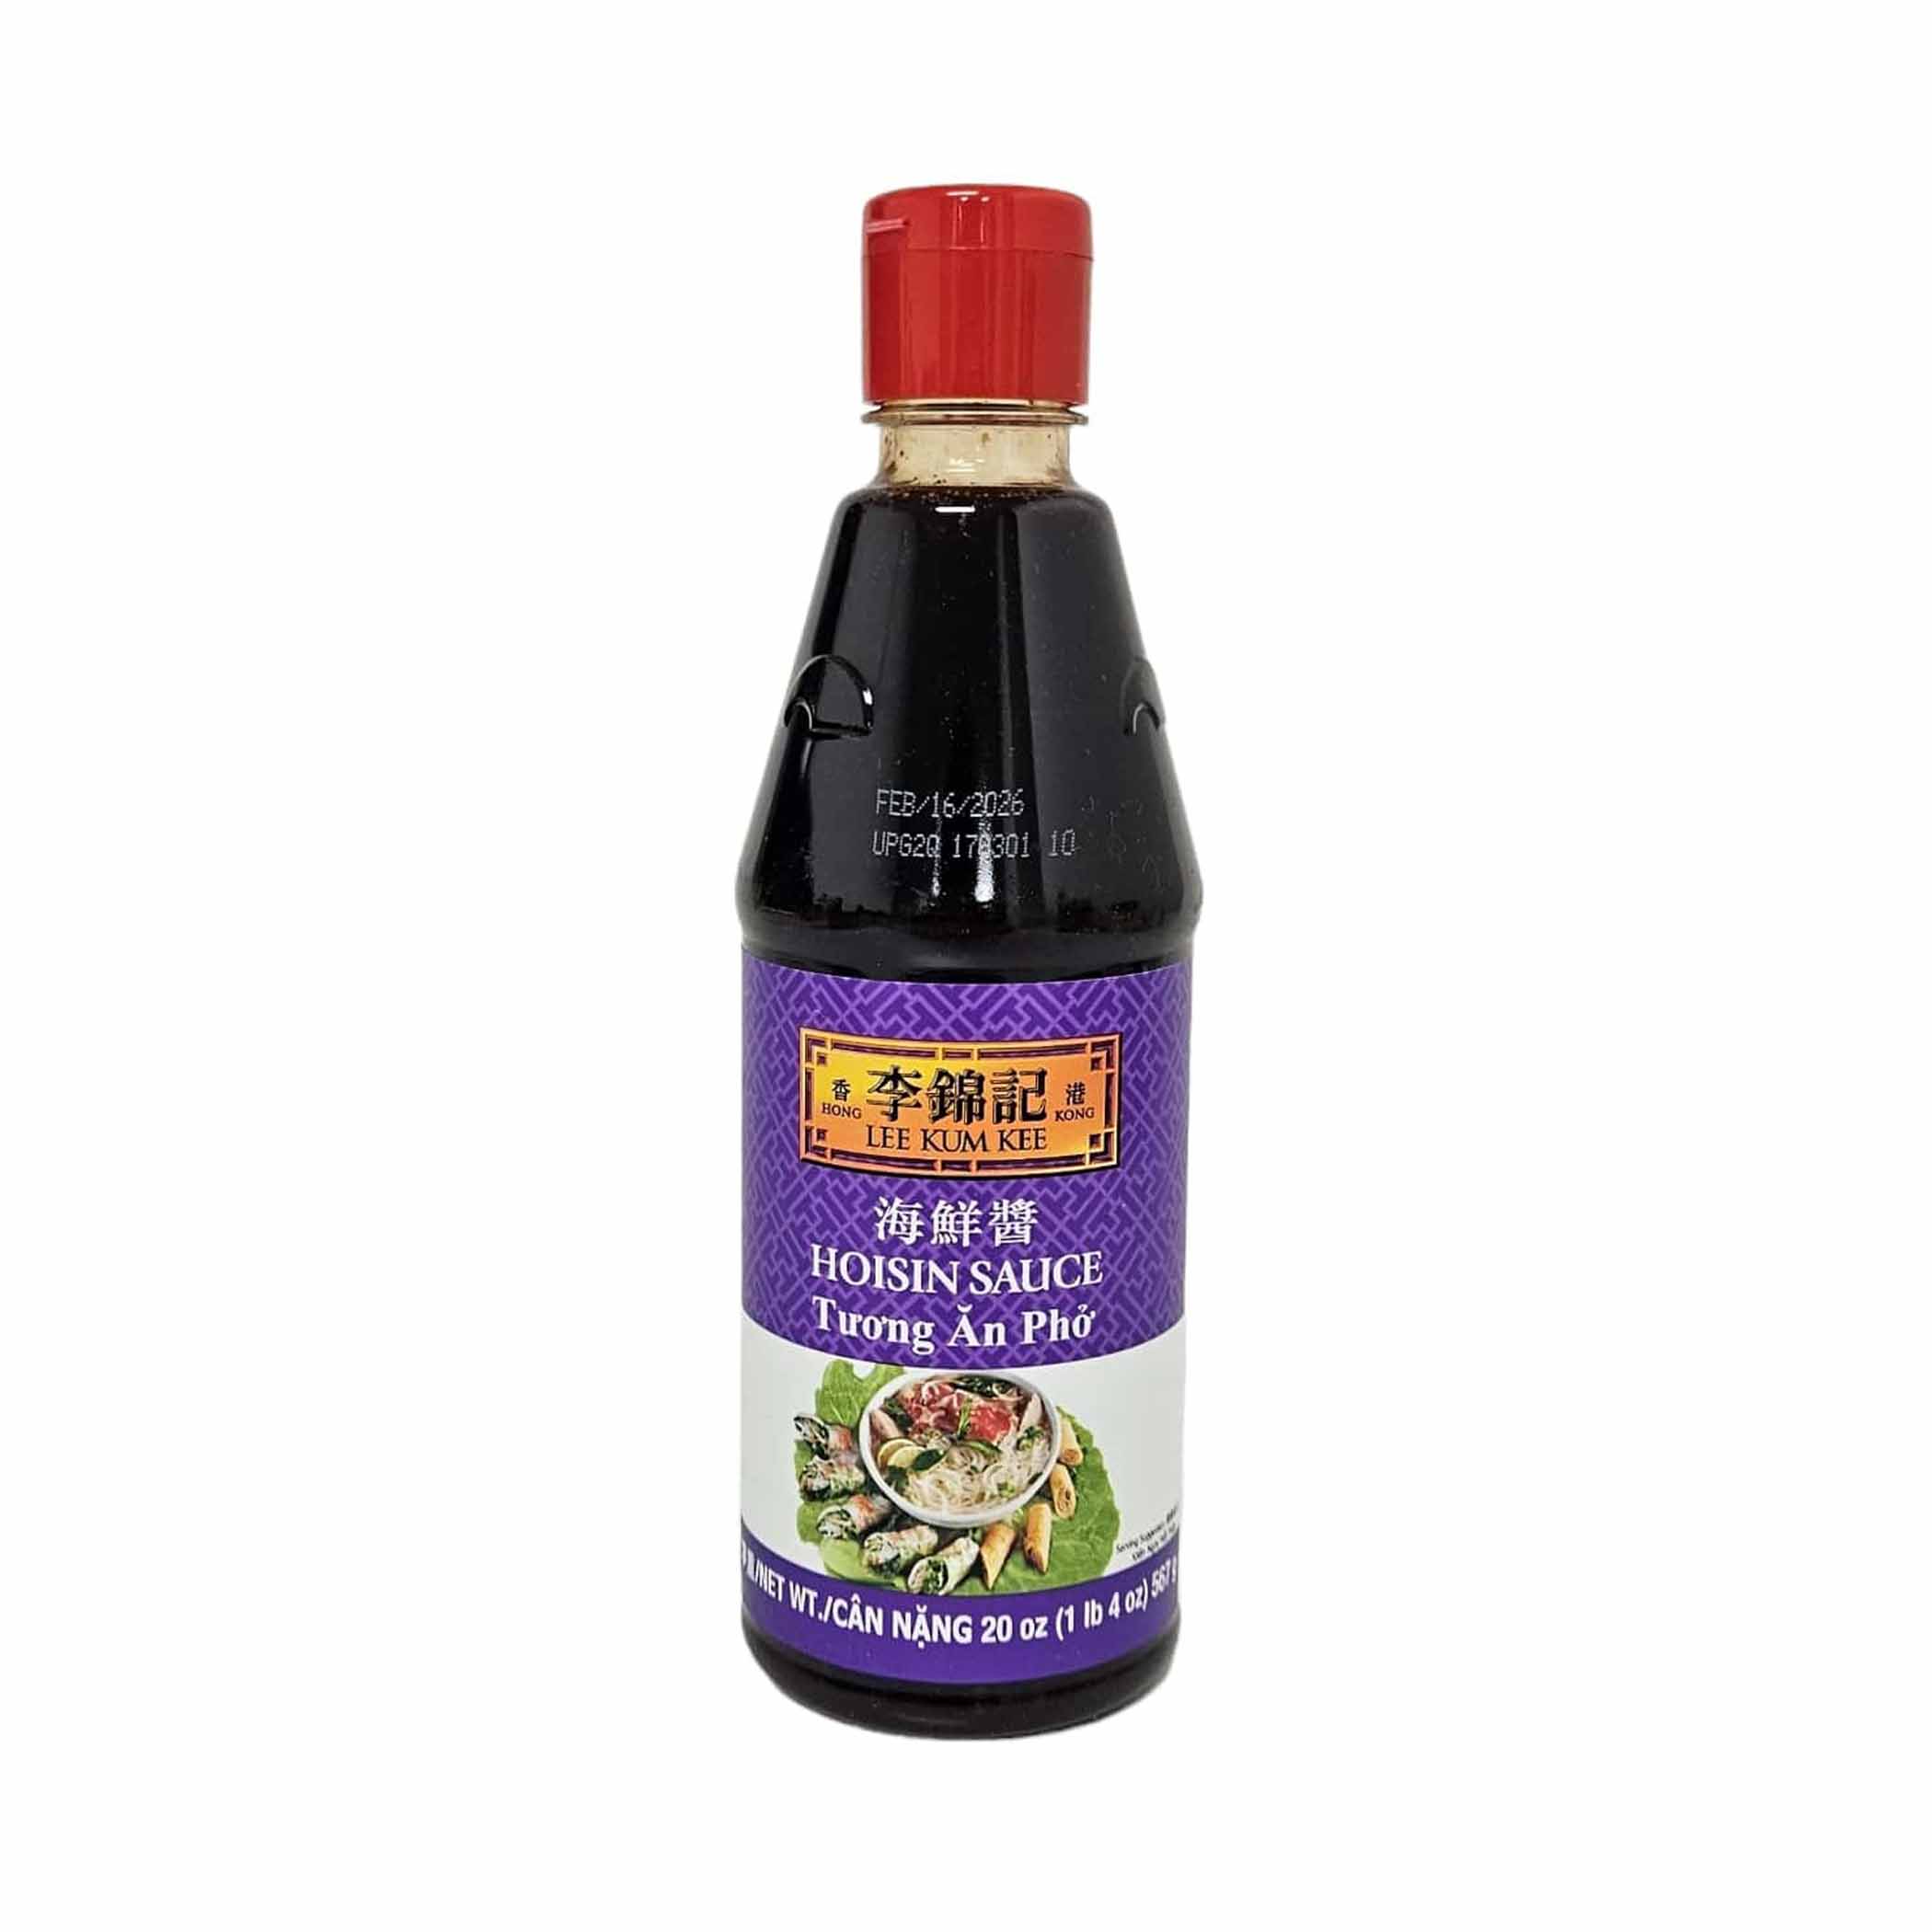 Hoisin Sauce  Lee Kum Kee - C. Pacific Foods